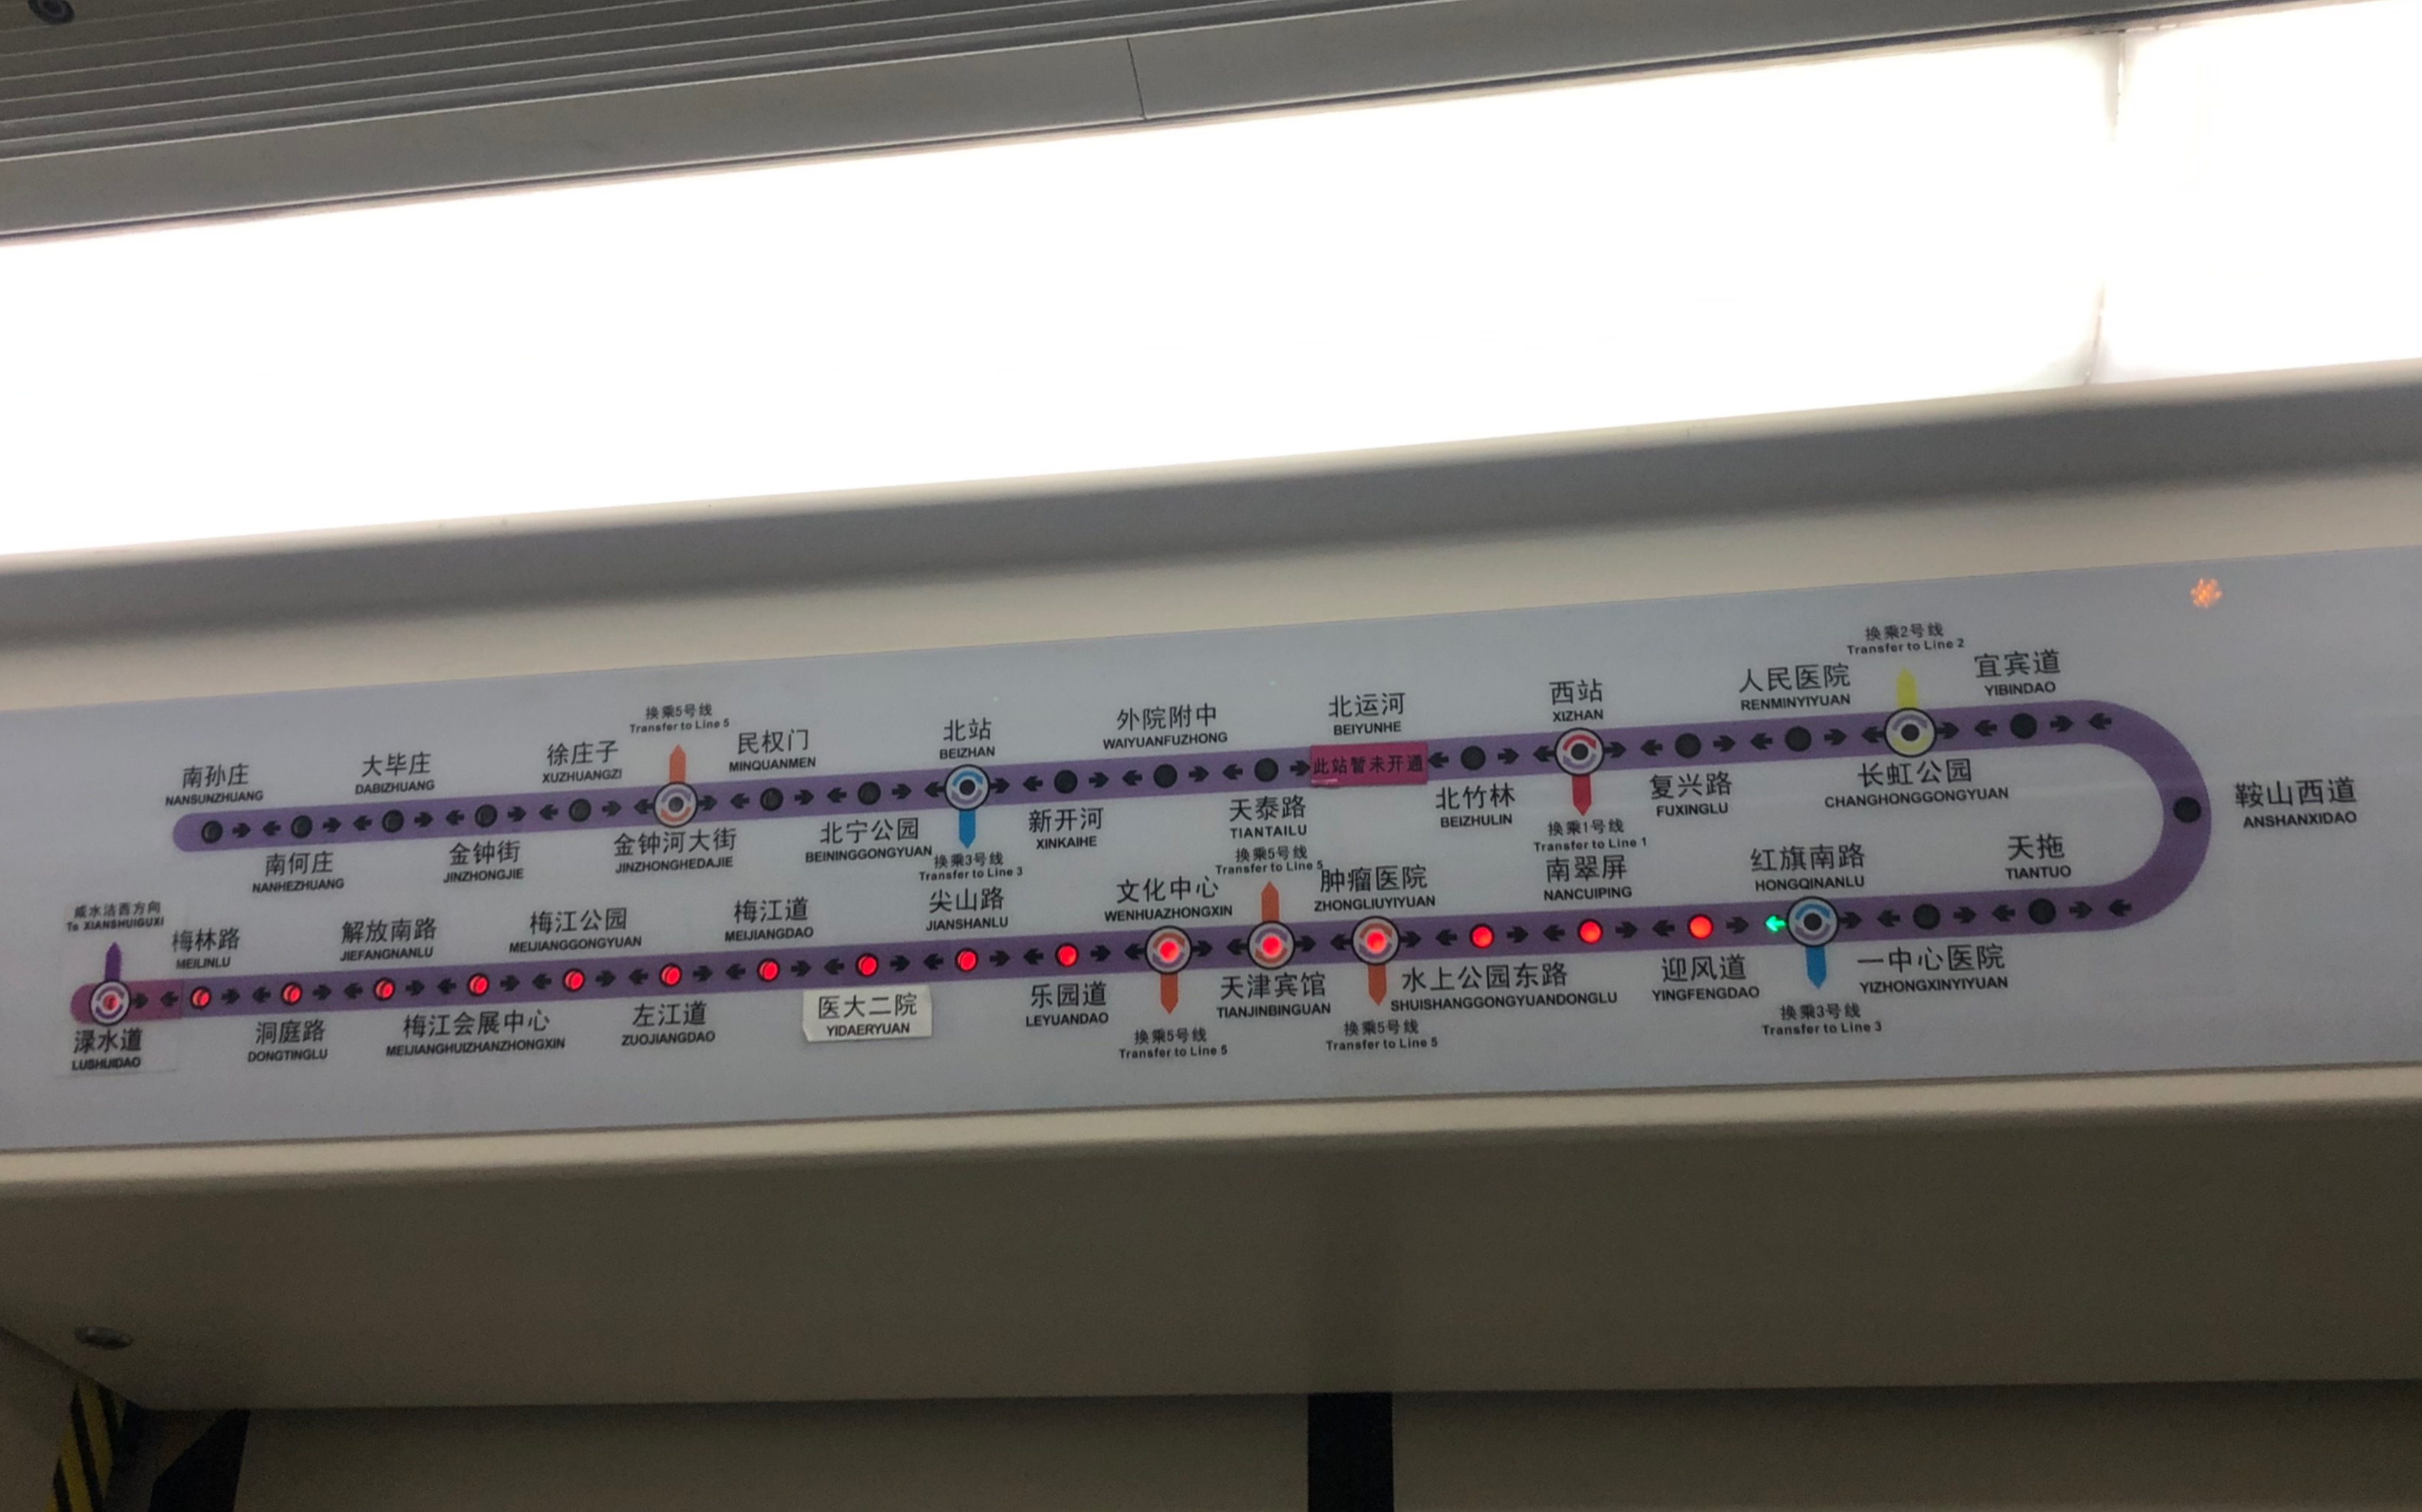 『天津地铁』6号线643车渌水道方向水上公园东路出站